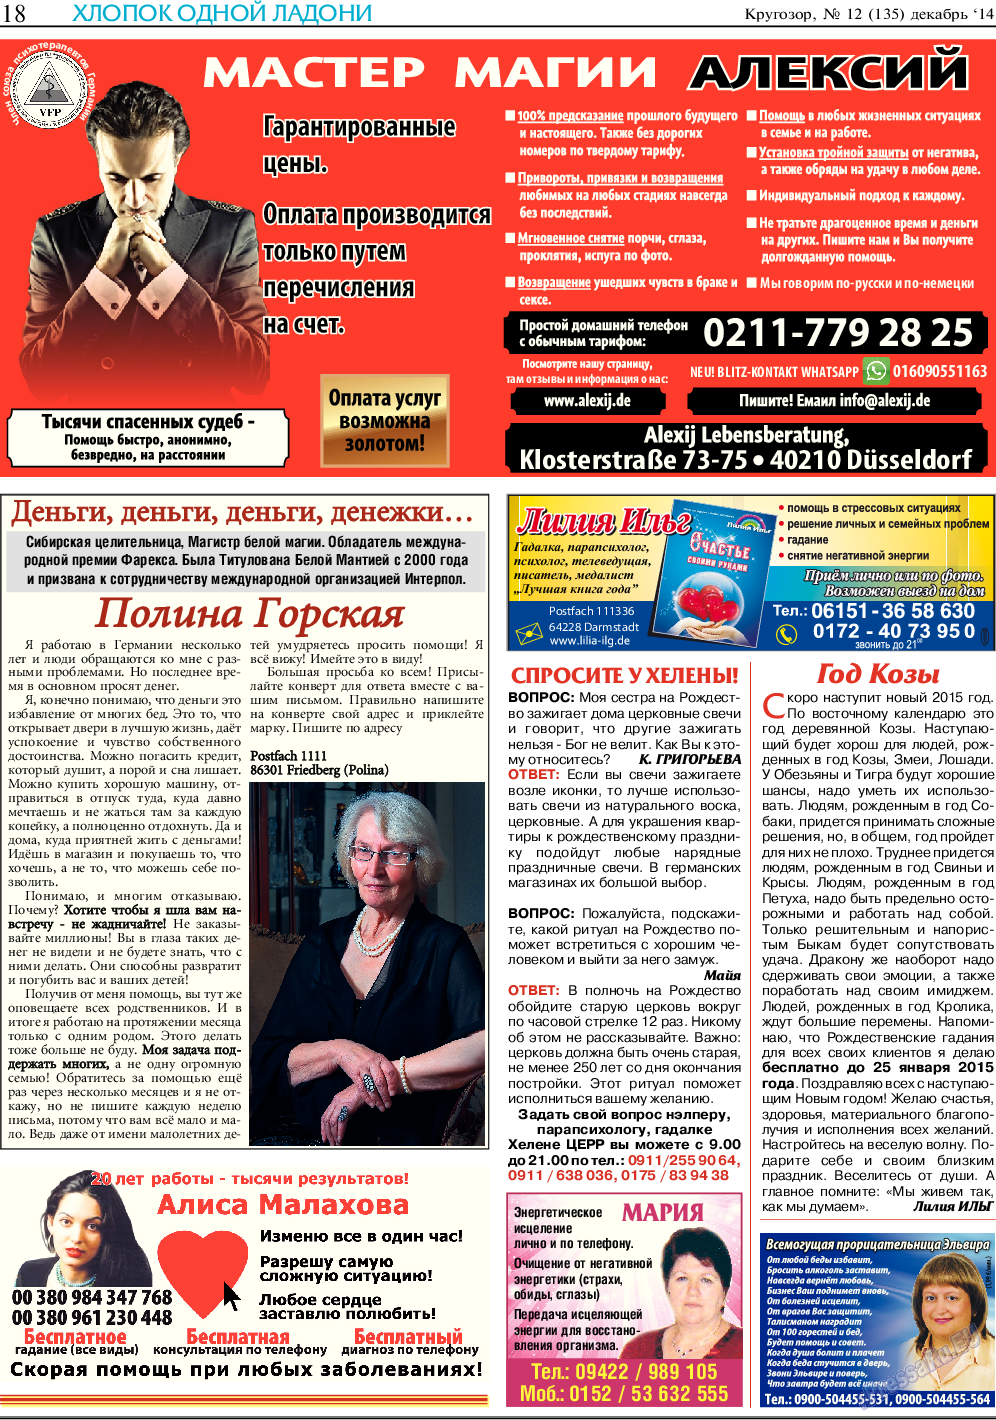 Кругозор (газета). 2014 год, номер 12, стр. 18